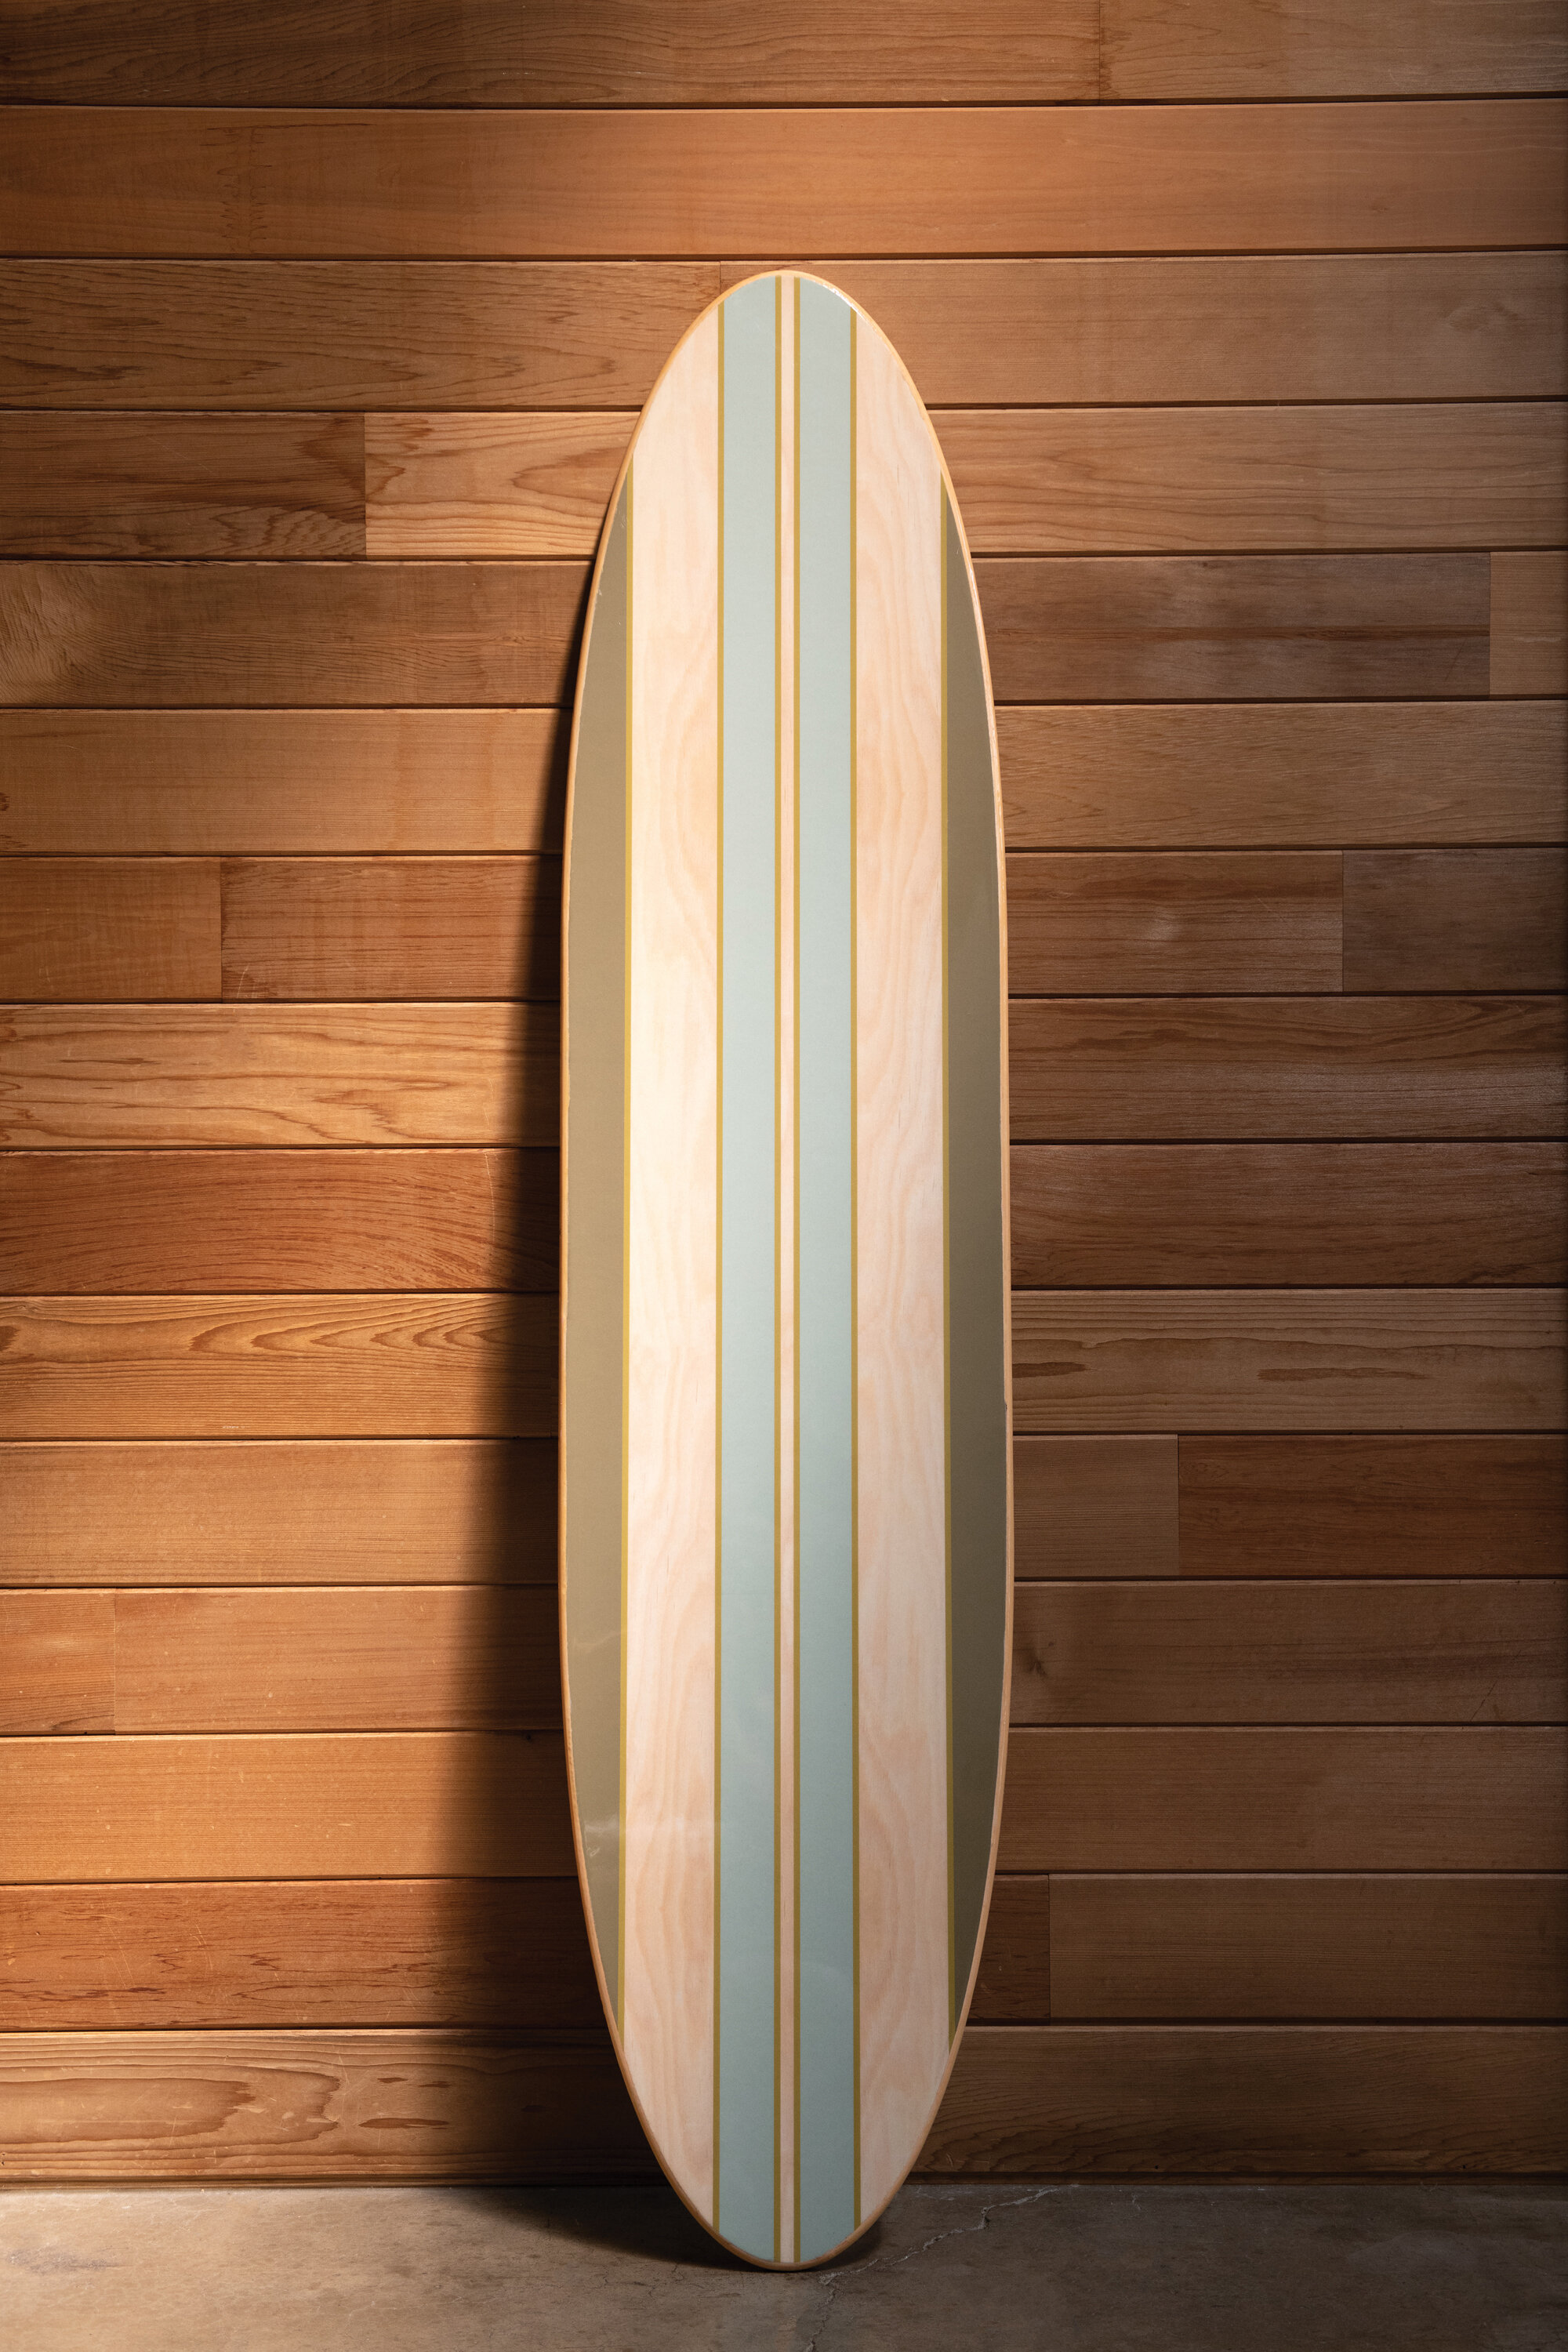 Rosecliff Heights Surfboard Wall Decor Reviews Wayfair